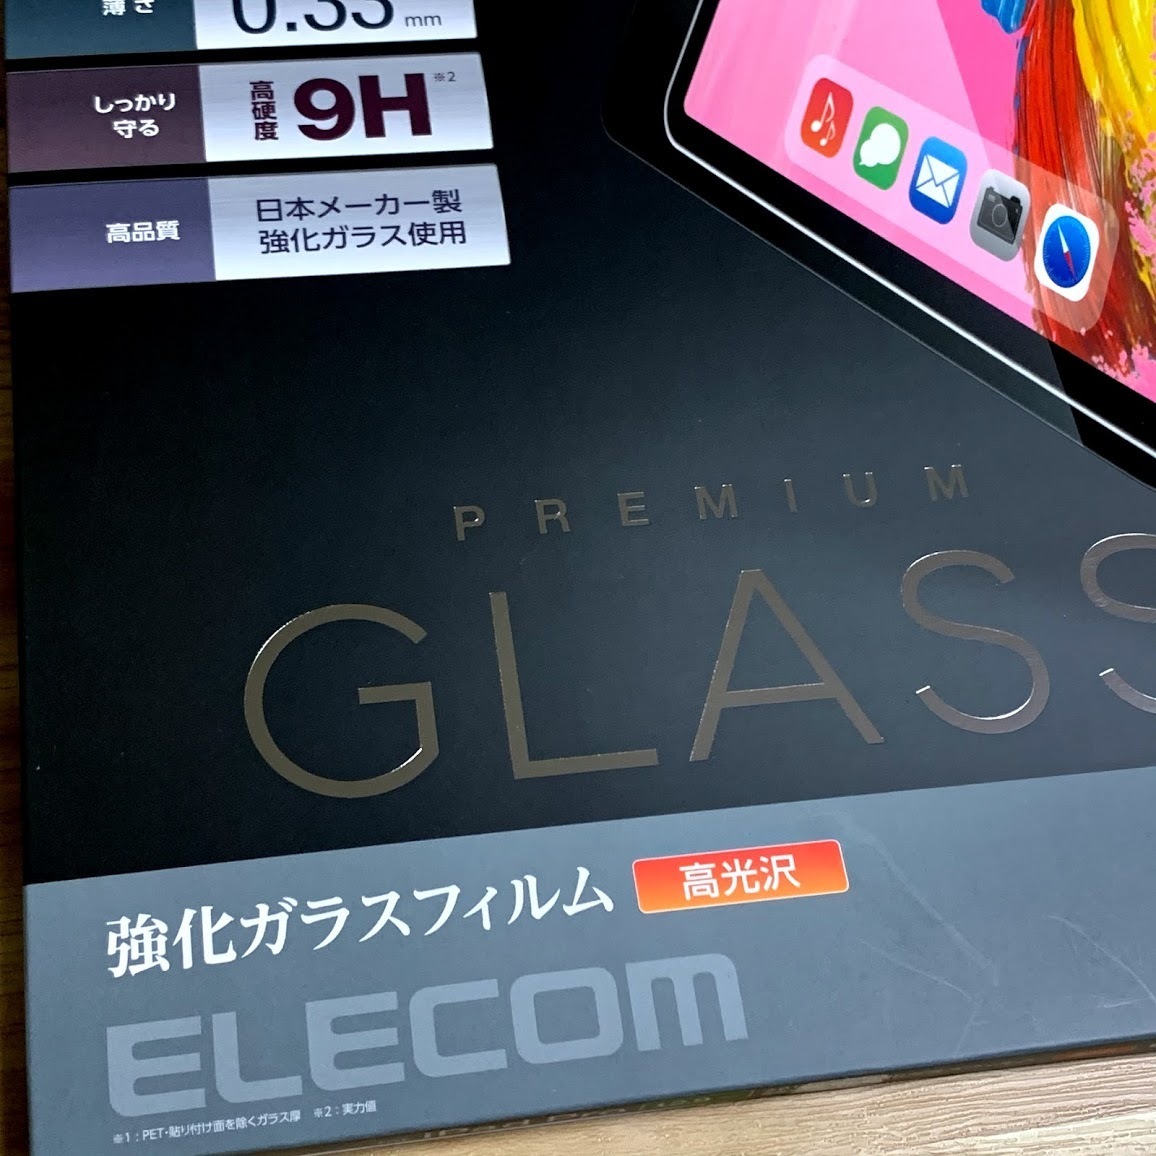 iPad Pro 12.9 強化ガラスフィルム 第3世代 4世代 5世代 2018 2020 2021年 液晶保護 0.33mm 日本メーカー製 エレコム 658